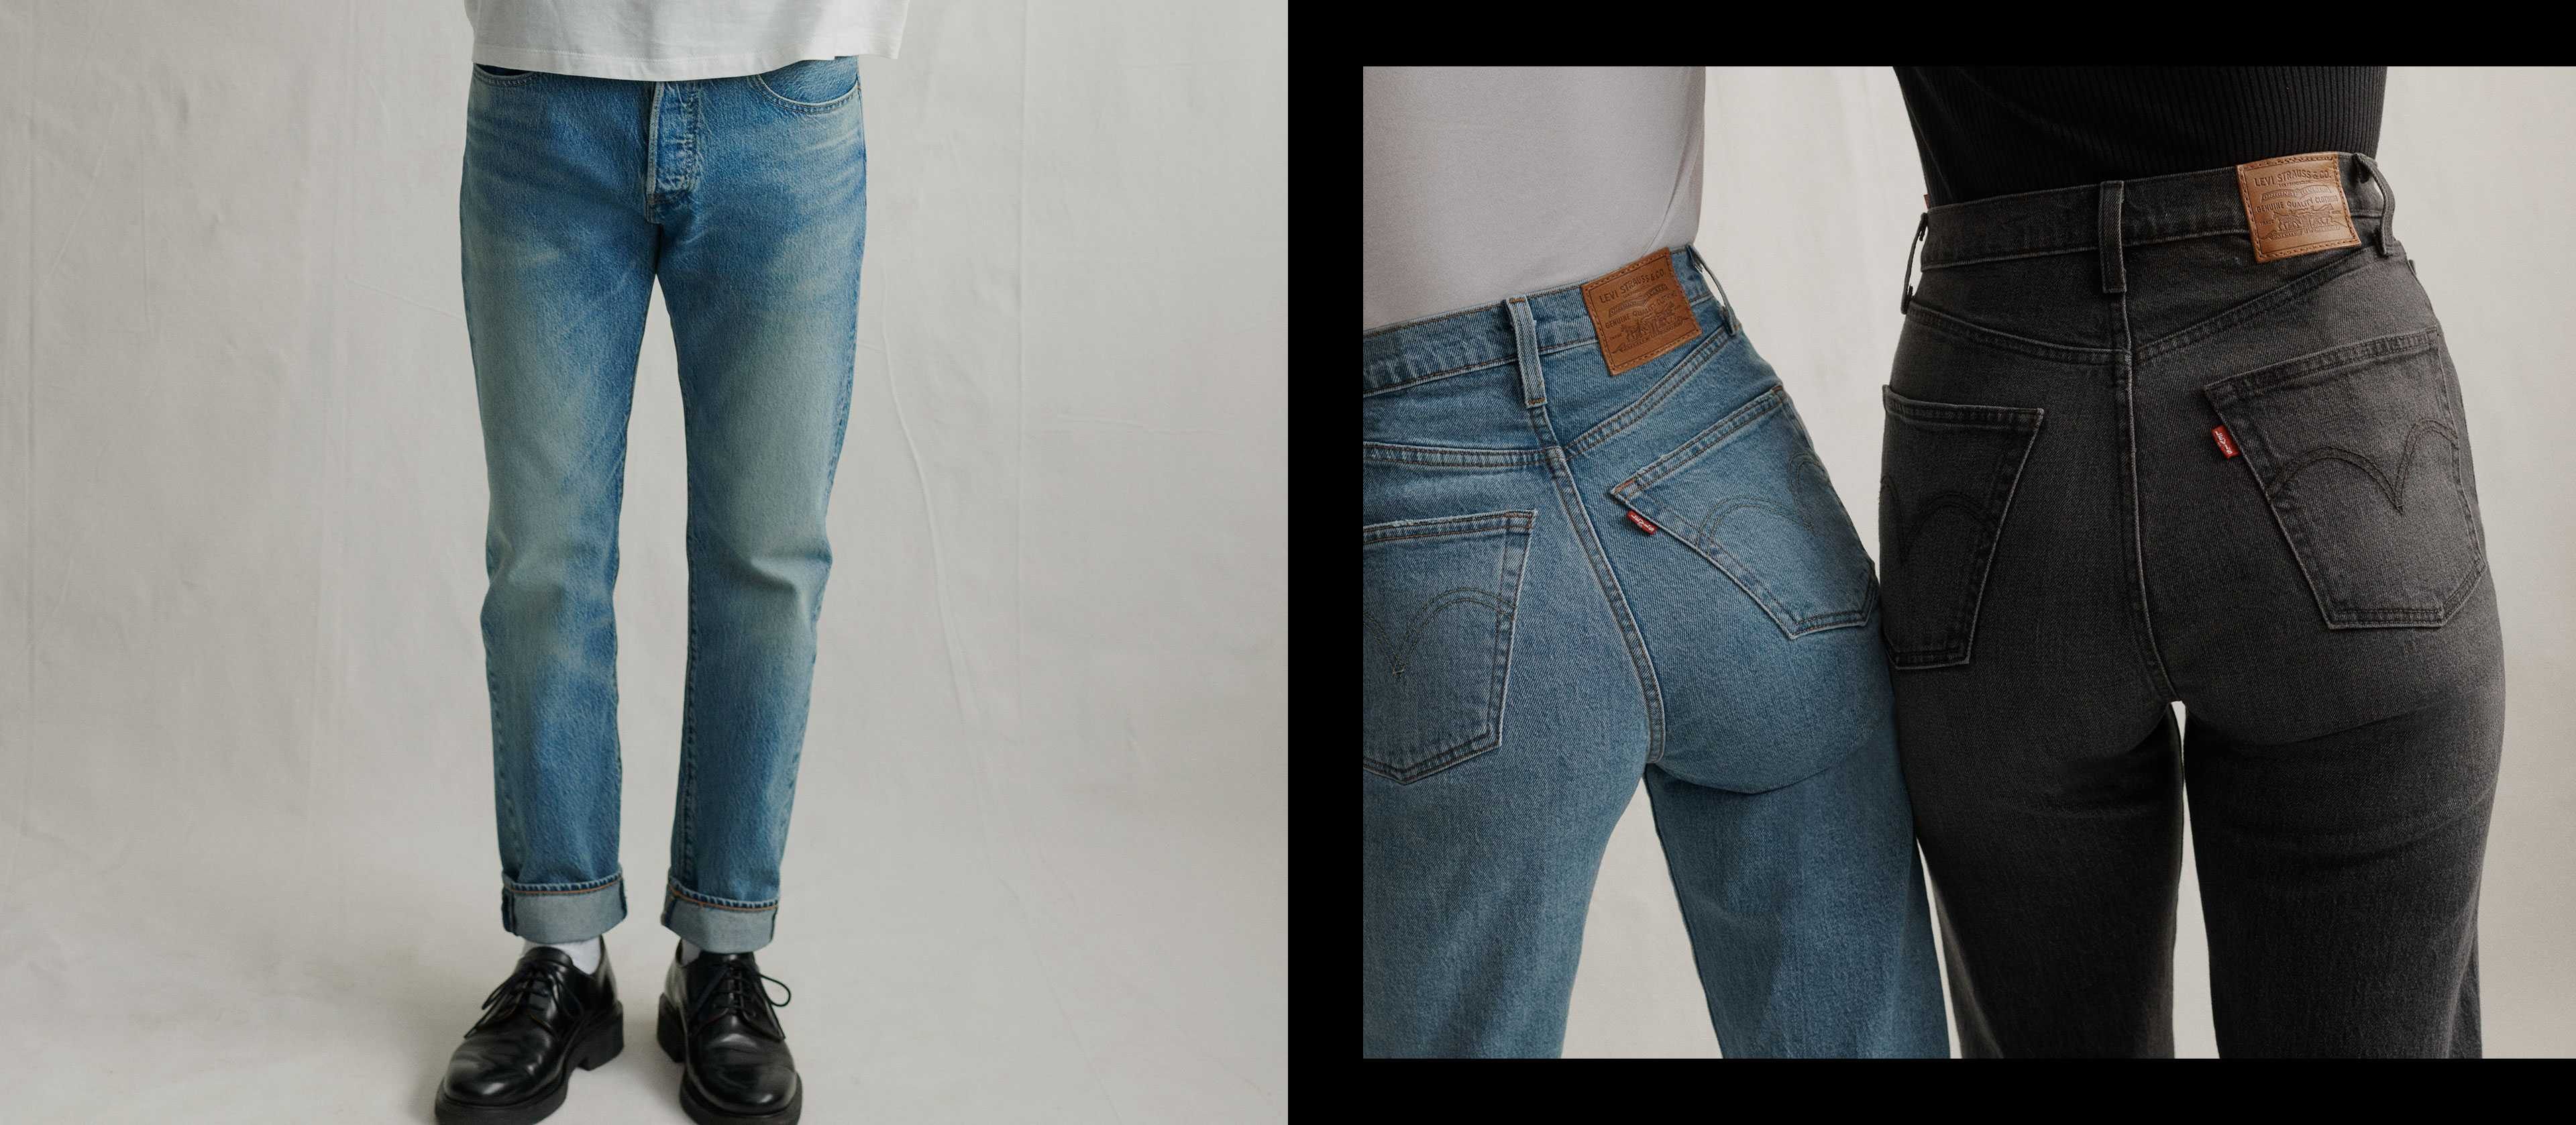 Lit Superposé 2 Places En Haut Et En Bas Frais Jeans Denim Jackets & Clothing